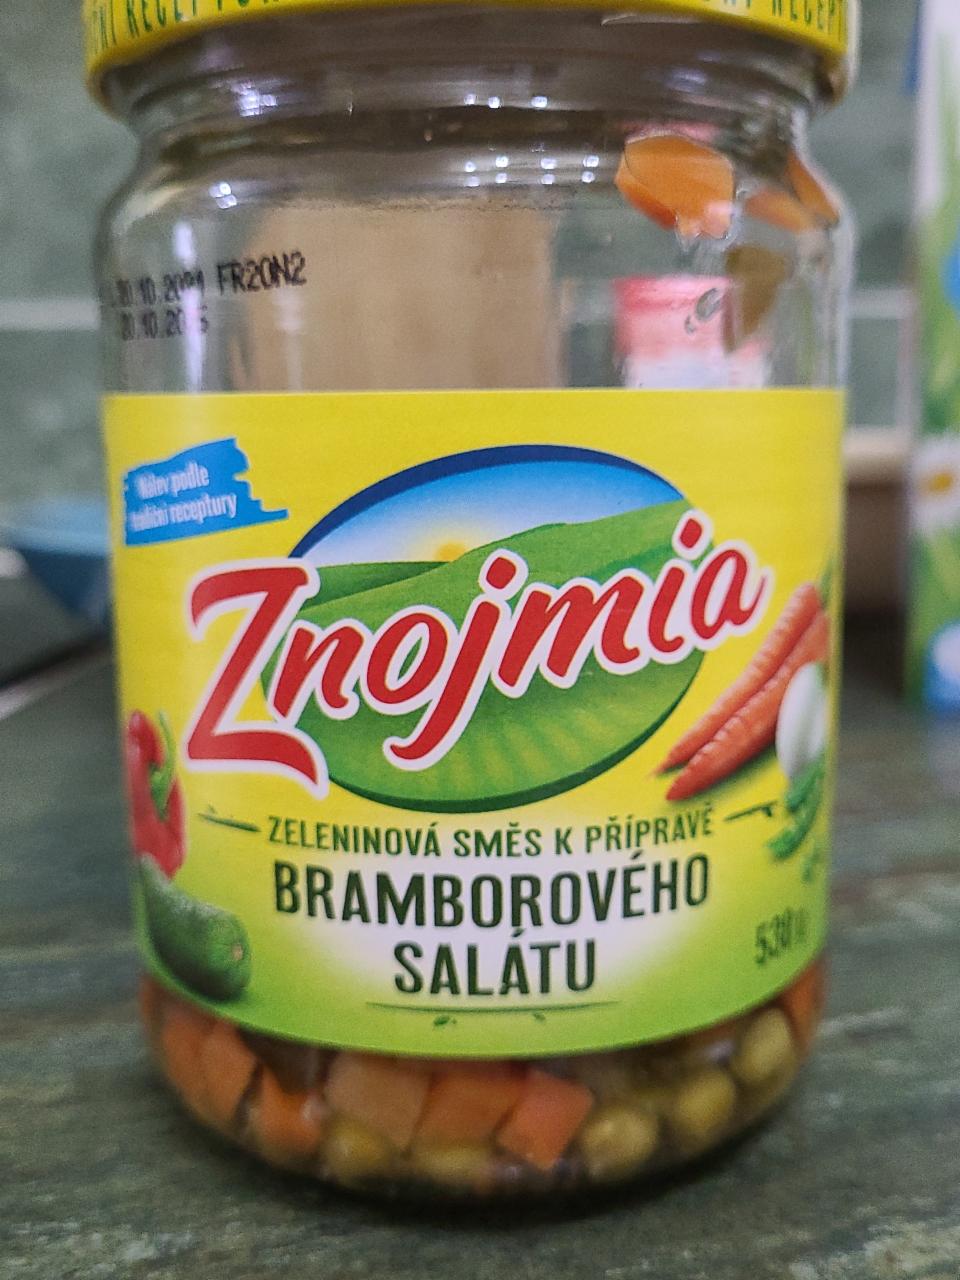 Fotografie - Zeleninová směs k přípravě bramborového salátu Znojmia